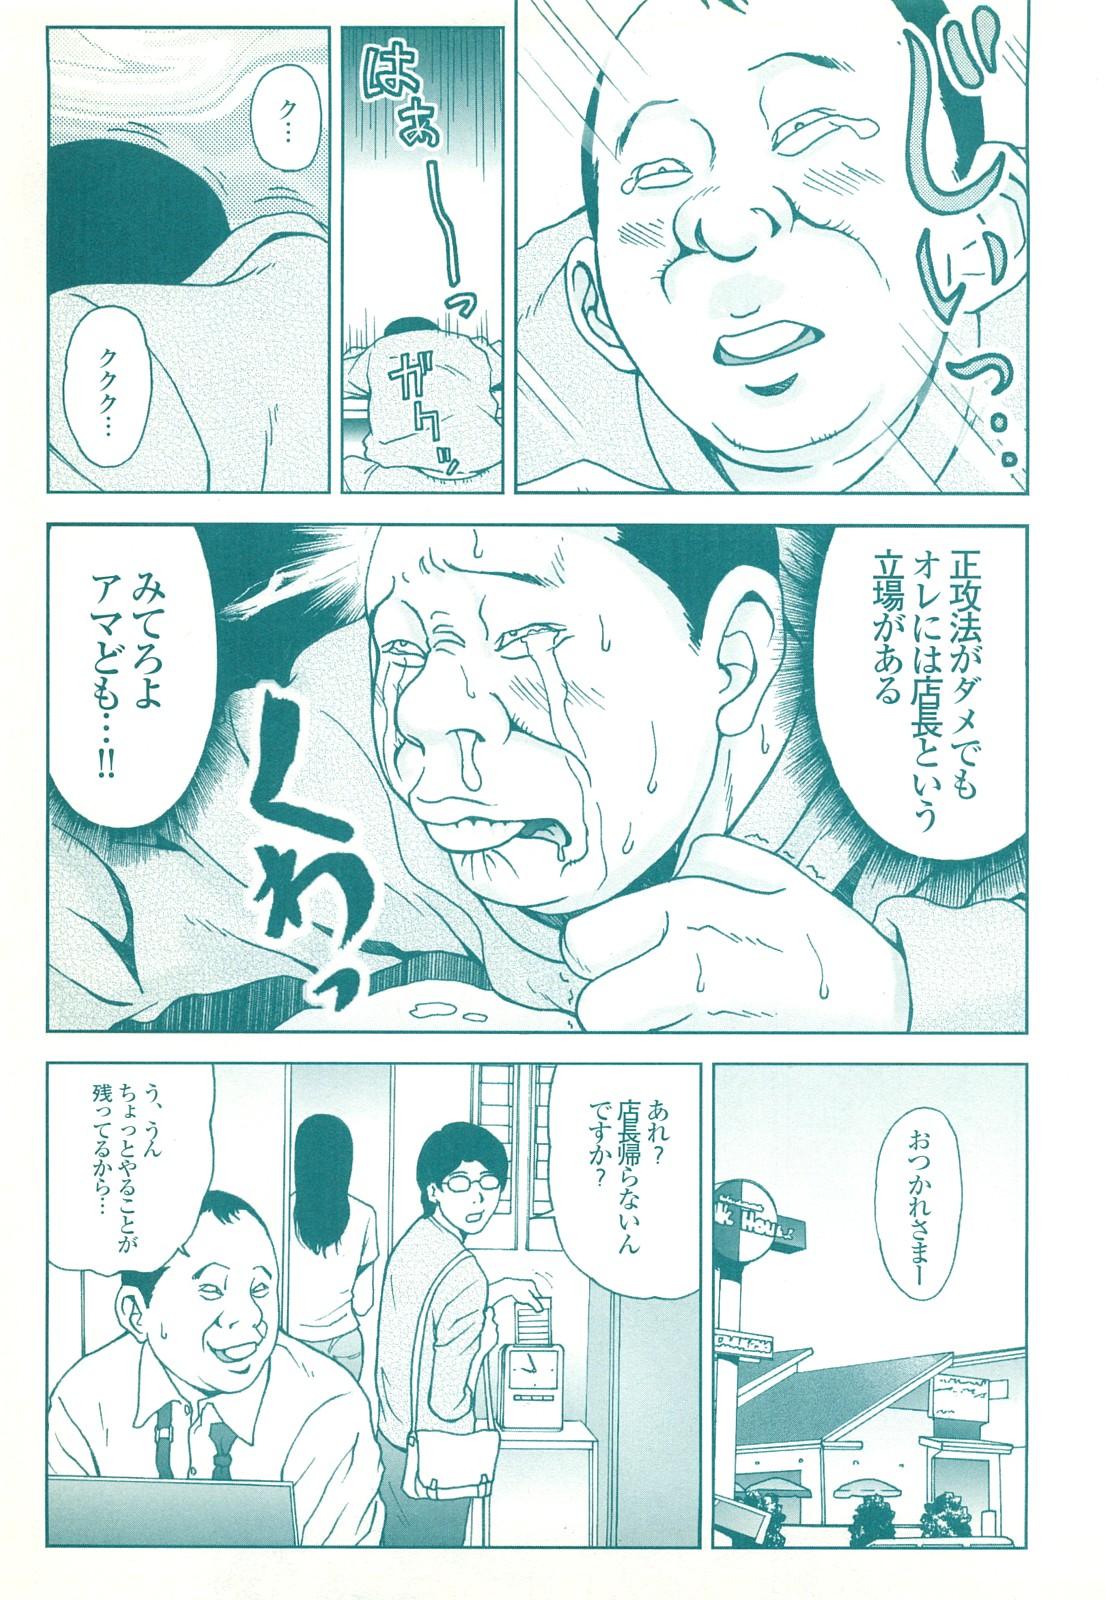 コミック裏モノJAPAN Vol.18 今井のりたつスペシャル号 182